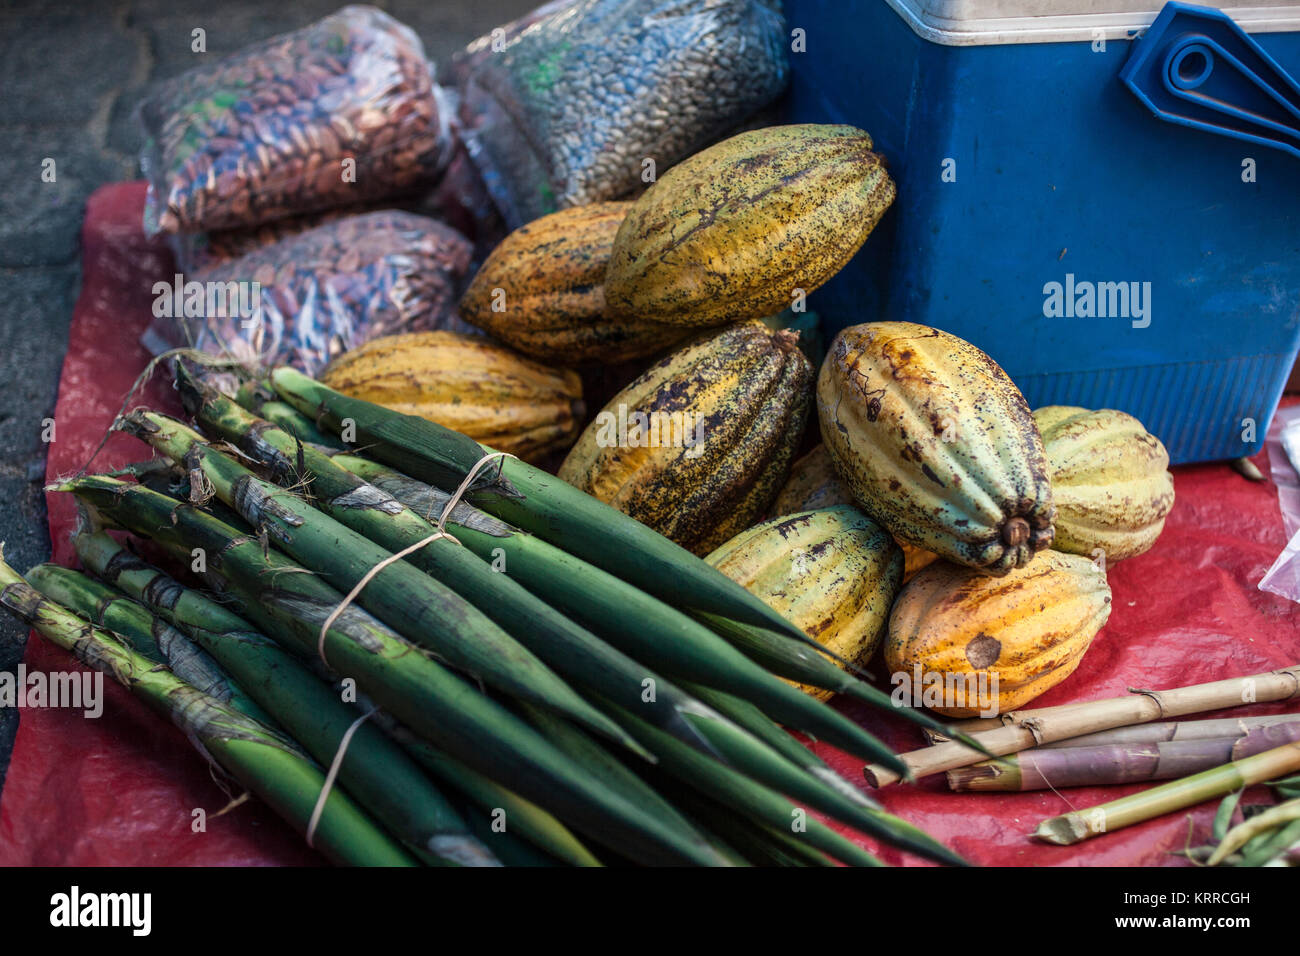 Products of Oaxaca including cocoa pods, Etla market, near Oaxaca City, Oaxaca, Mexico Stock Photo